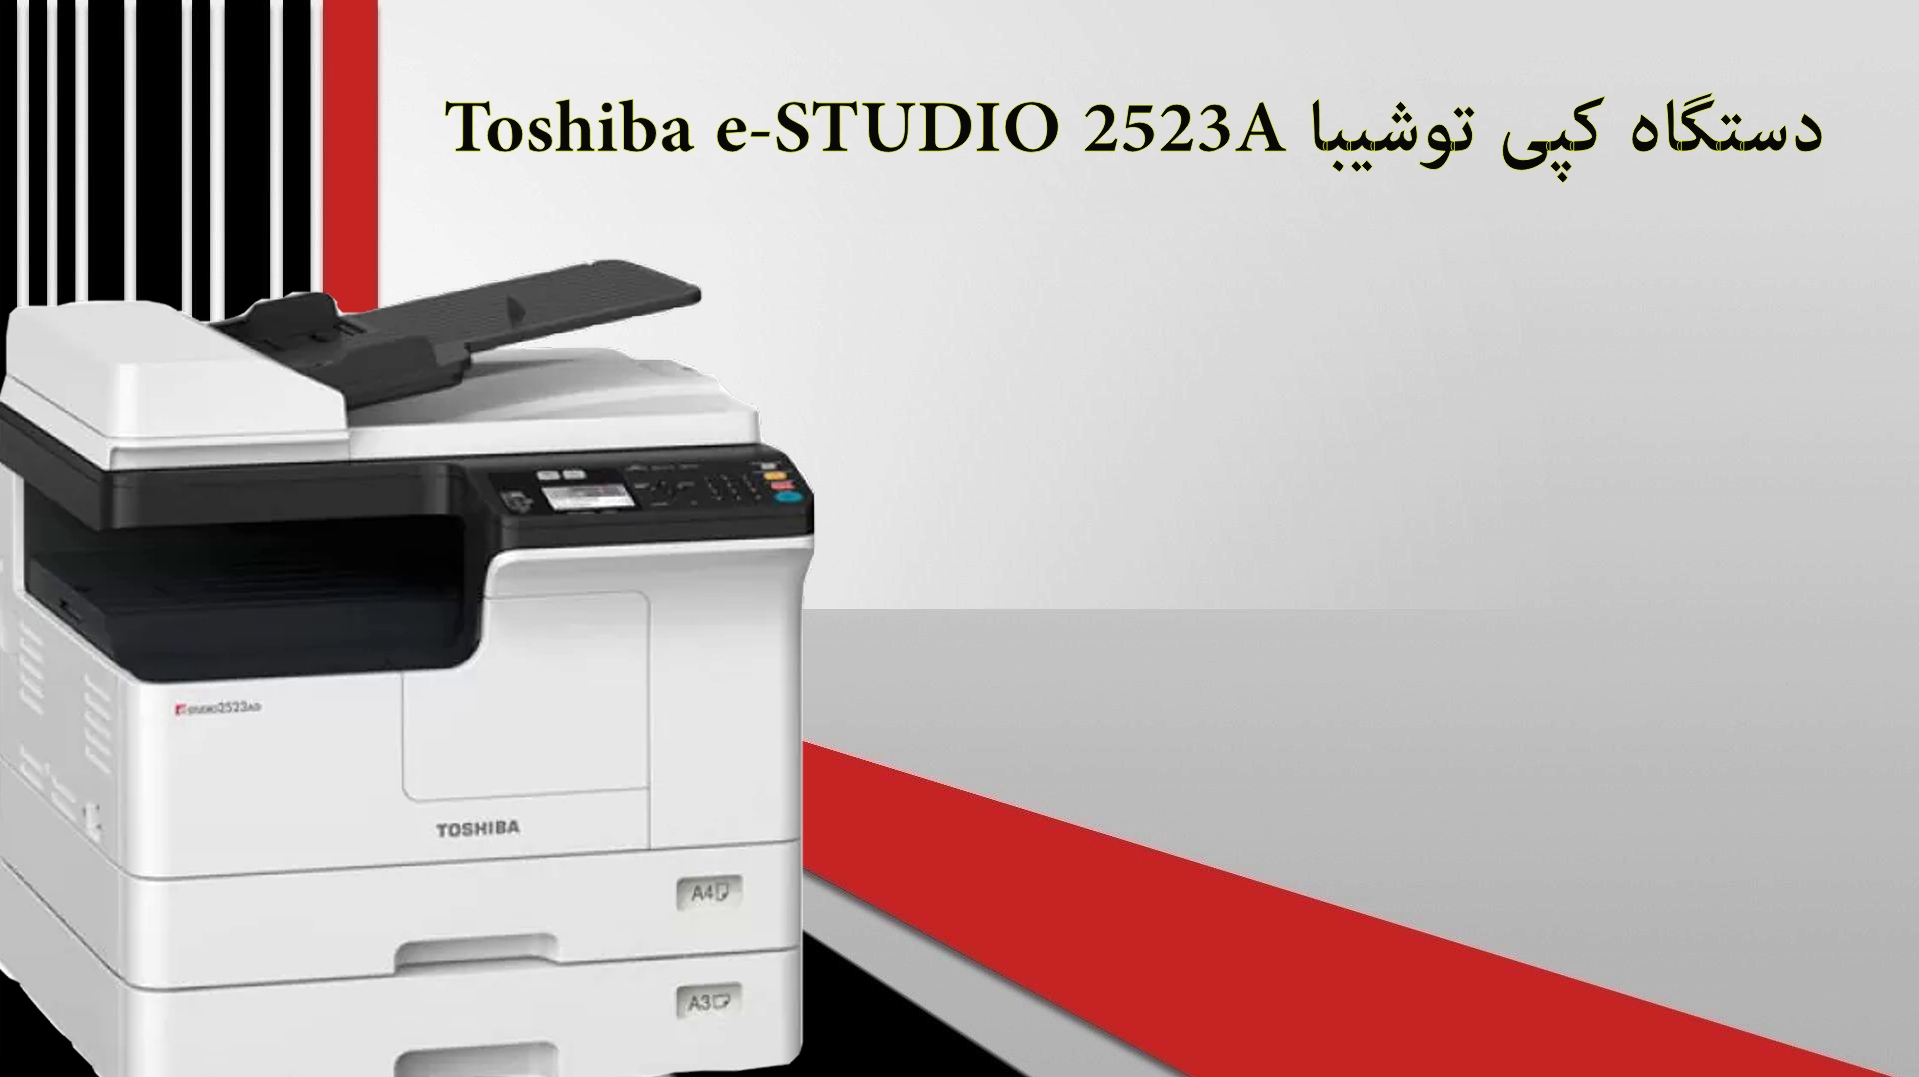 دستگاه کپی توشیبا Toshiba e-STUDIO 2523A